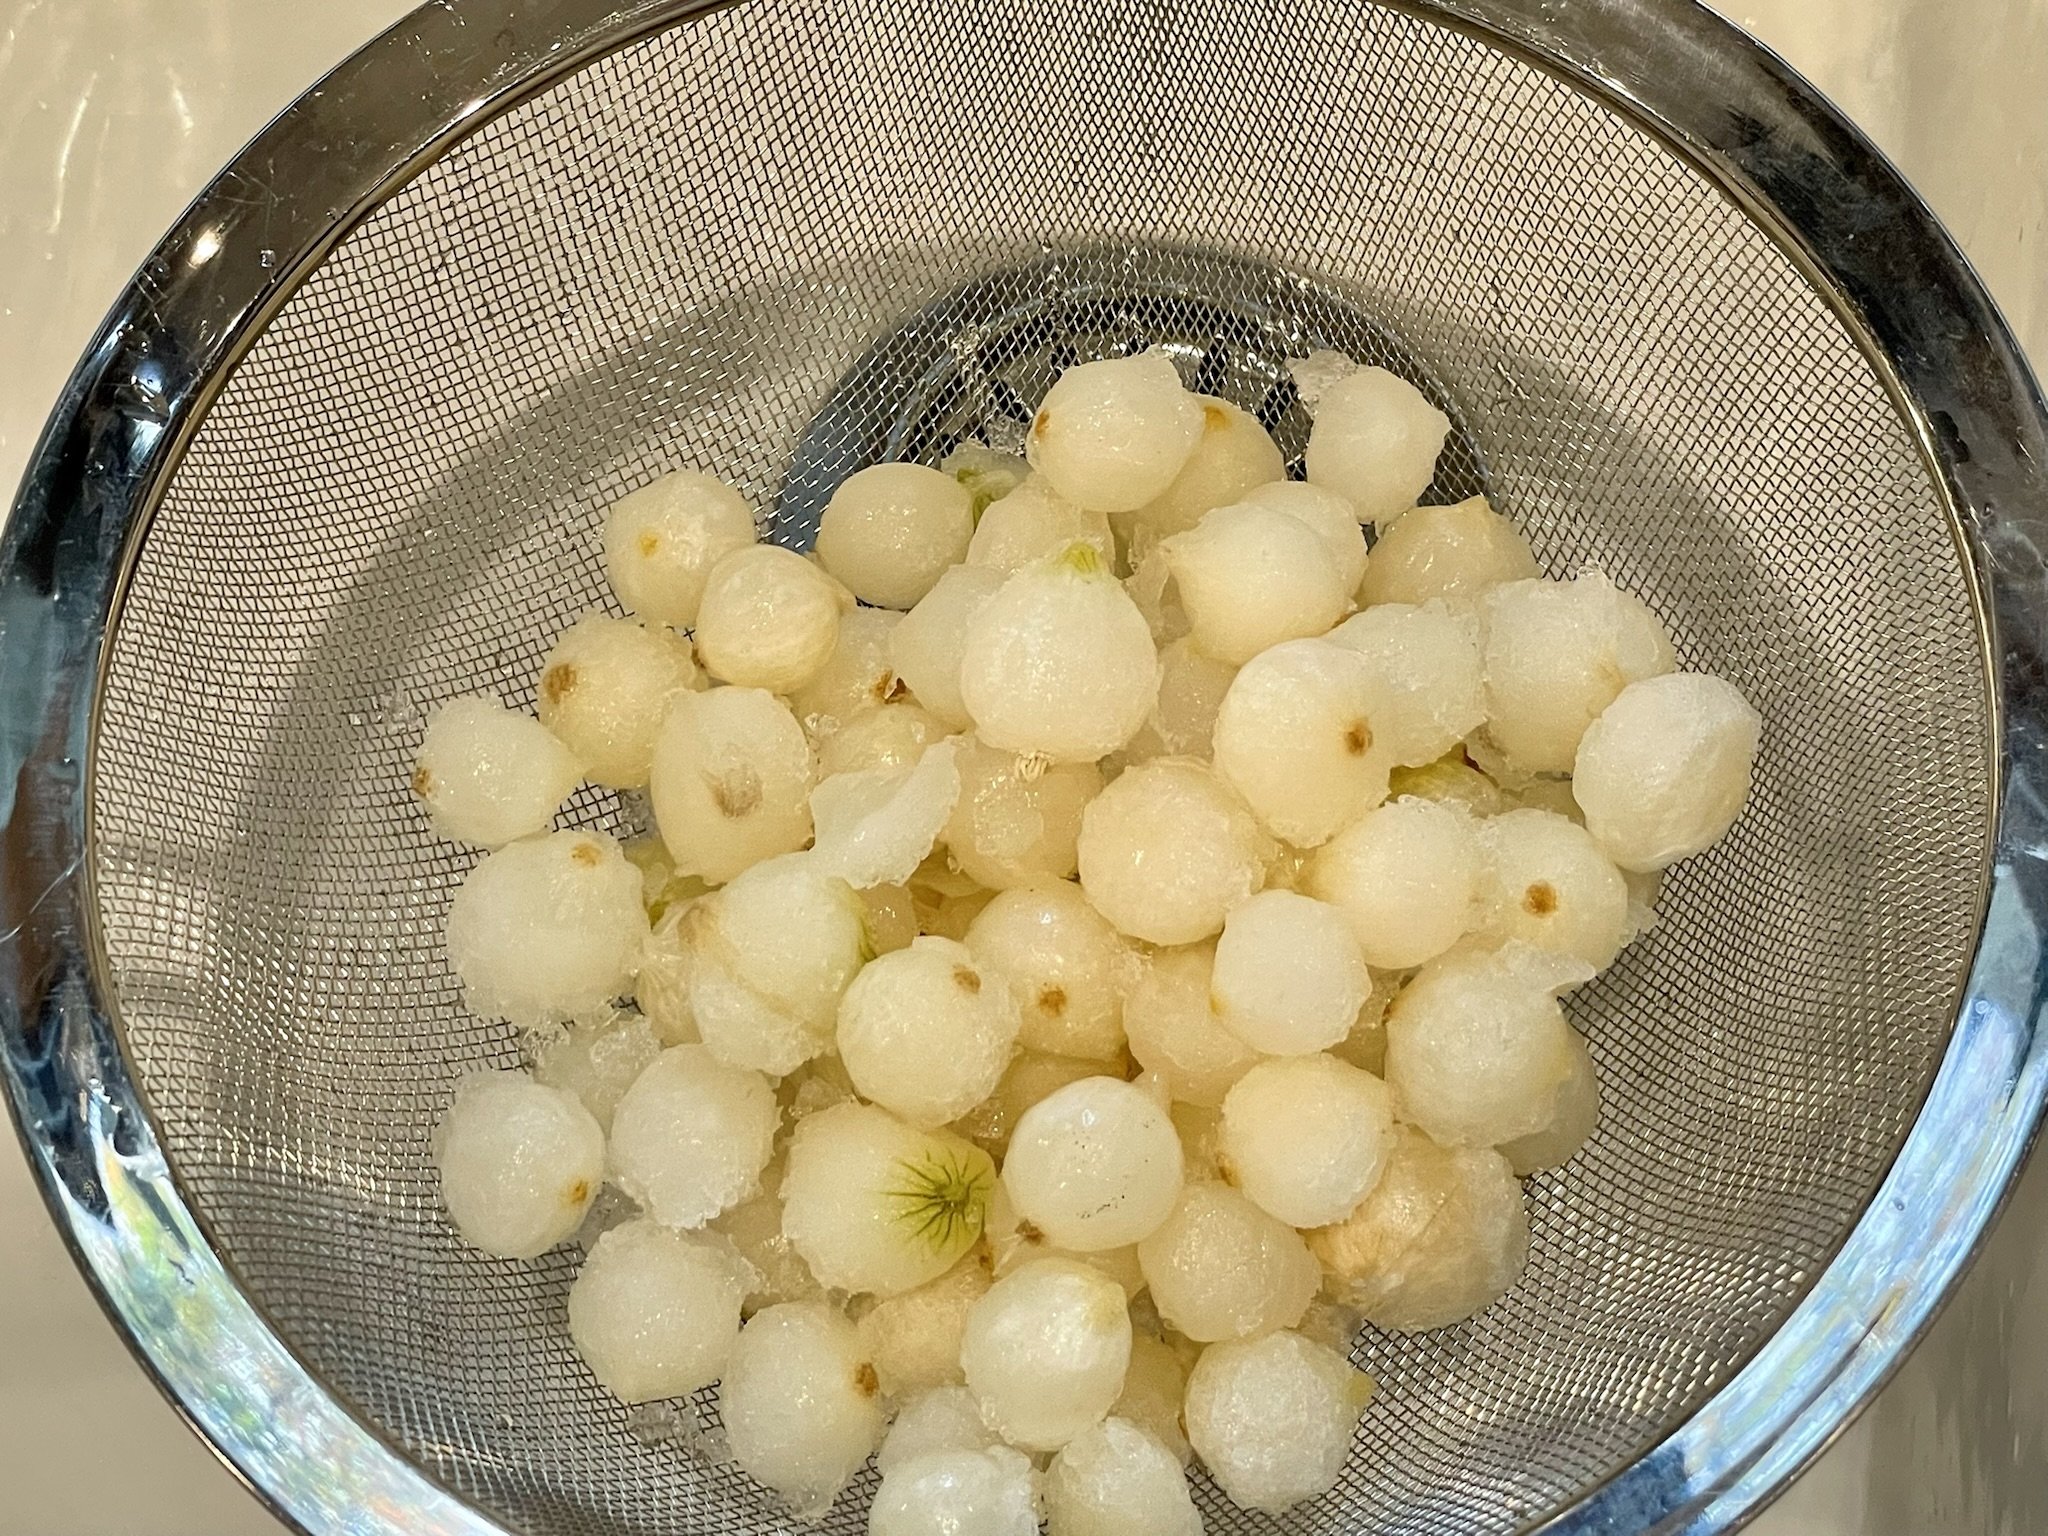 Frozen pearl onions.